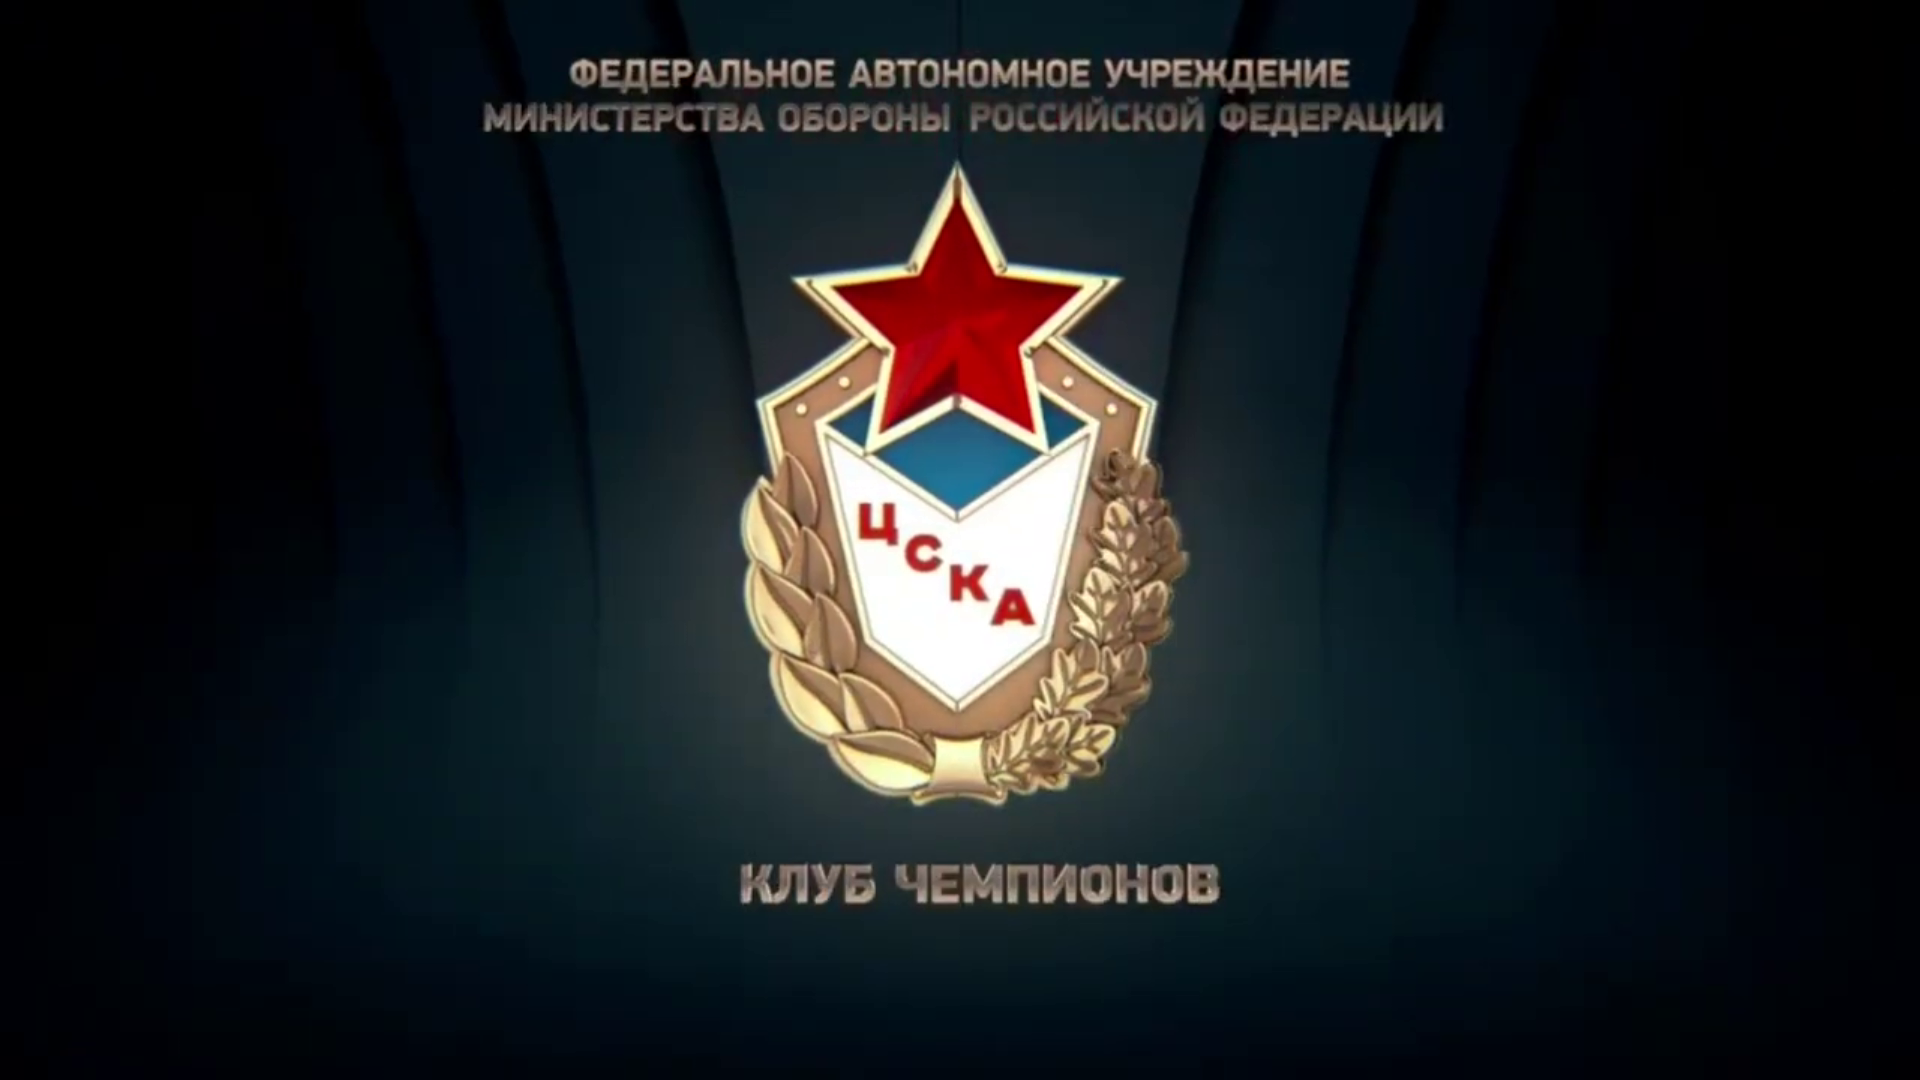 Эмблема общества ЦСКА